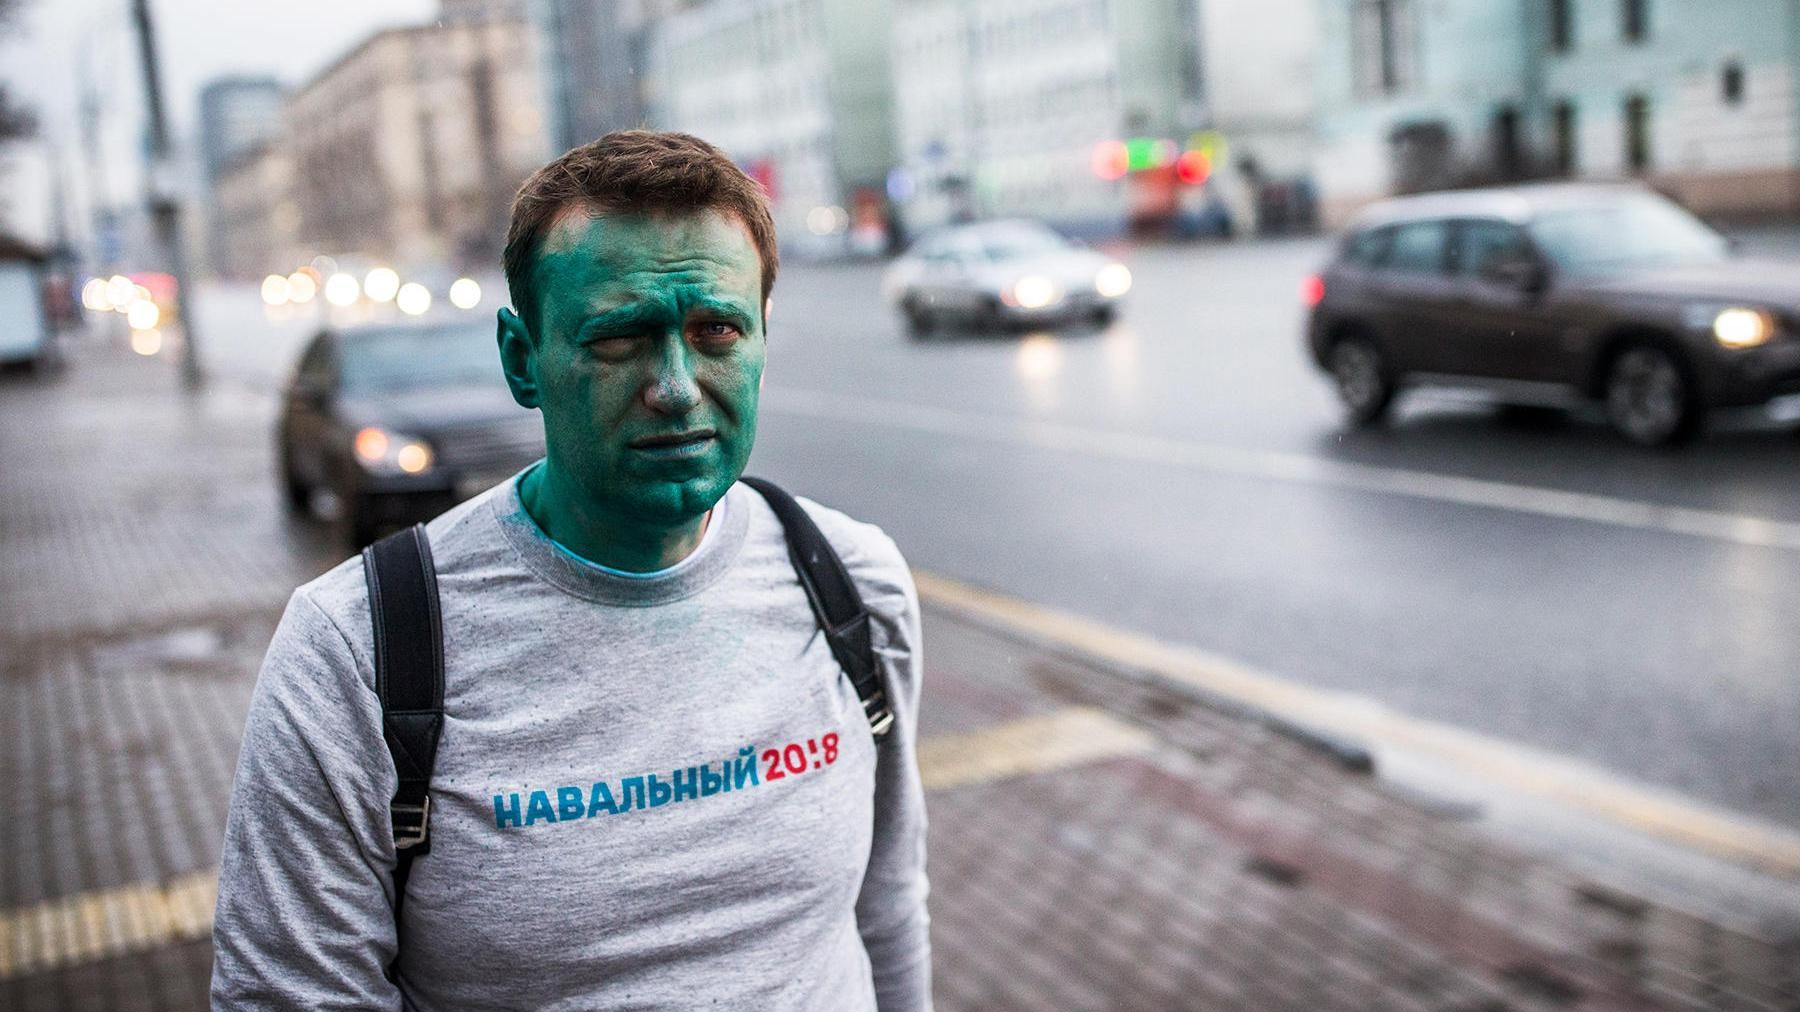 Названы имена радикалов, которые дерзко напали на Навального